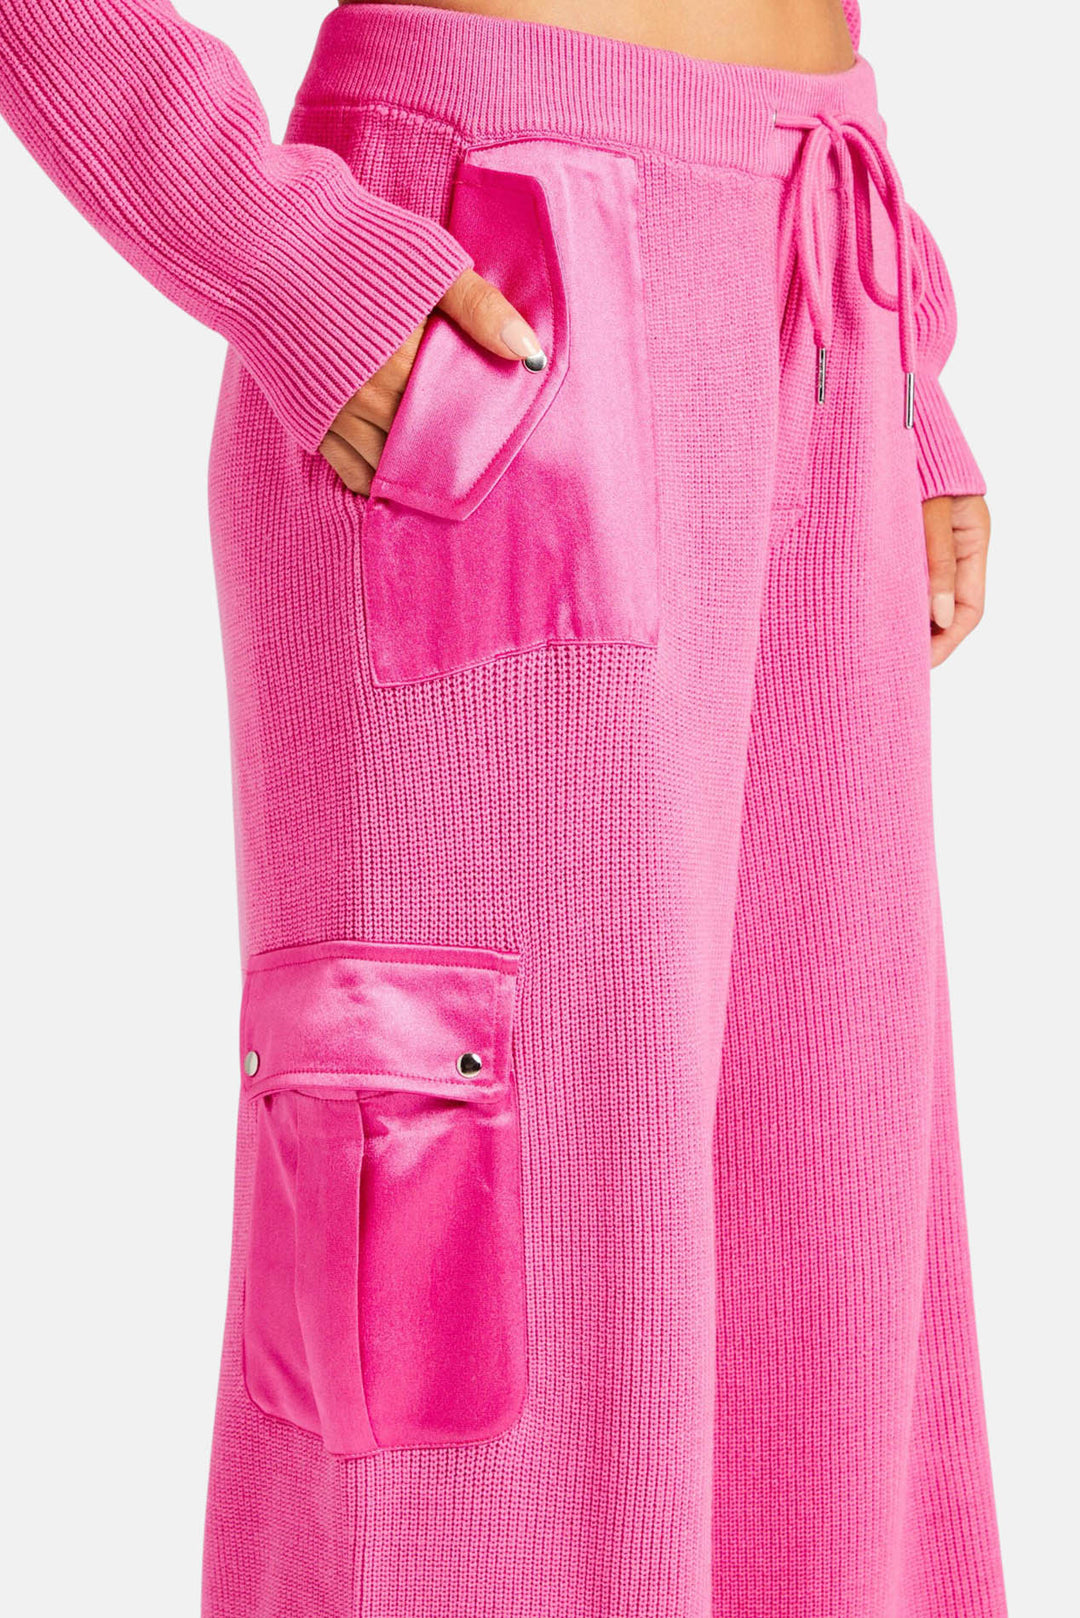 Daph Knit Cargo Pant Malibu Pink